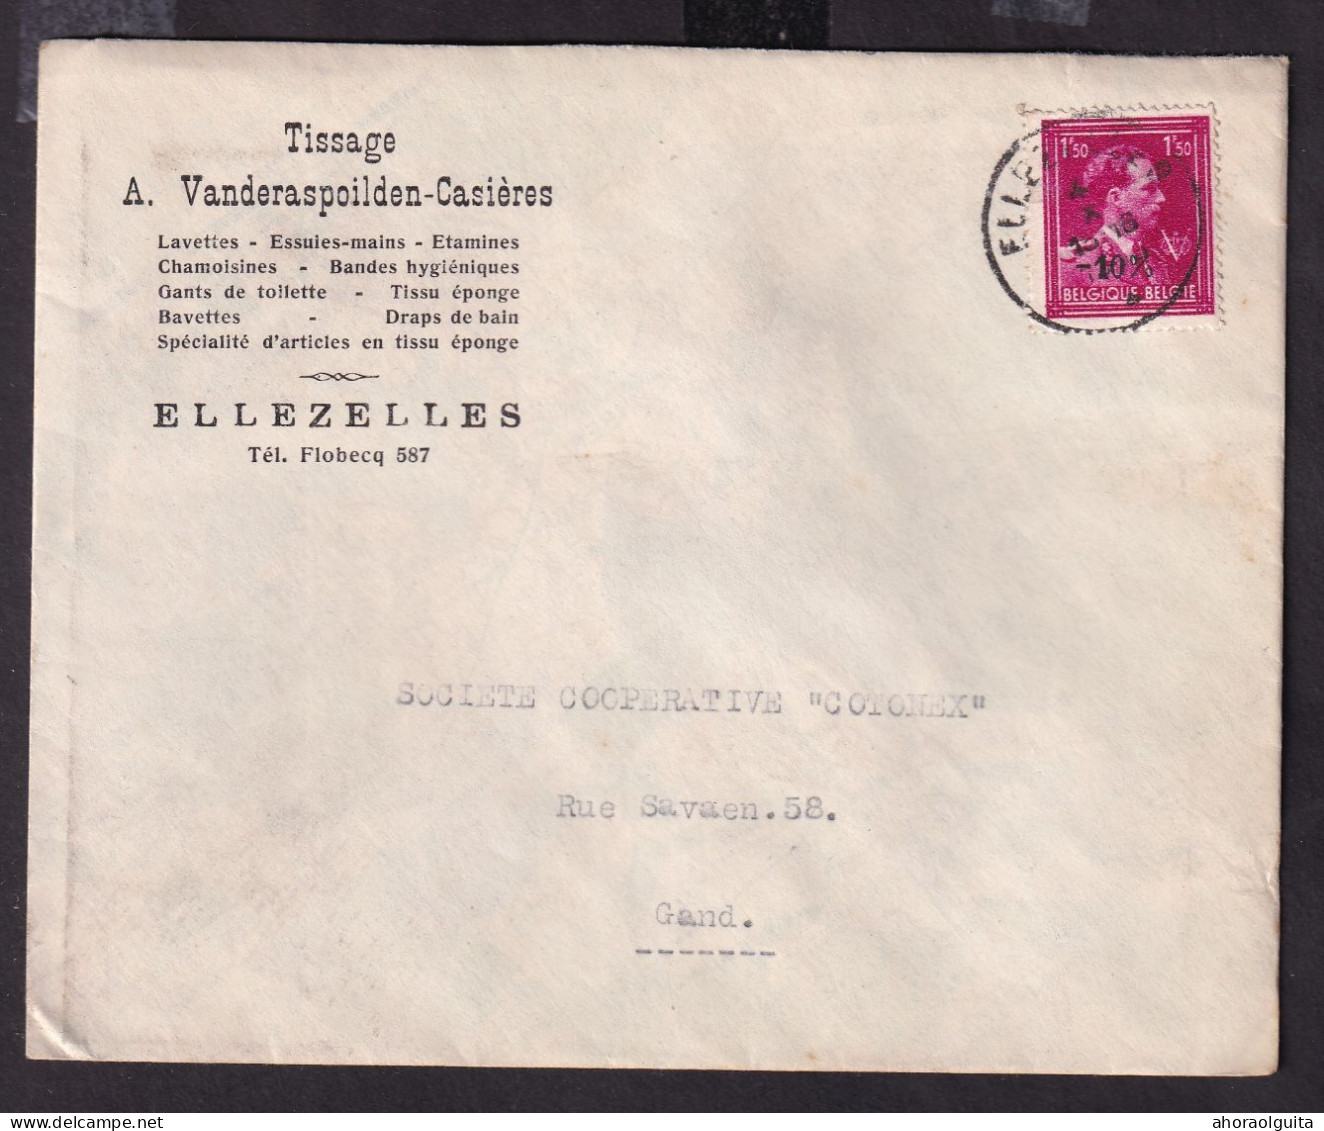 DDGG 145 -- 2 X Enveloppe TP Moins 10 % Surcharge Locale§Typo ELLEZELLES 1946 - Entete Tissage Vanderaspoilden-Casières - 1946 -10 %